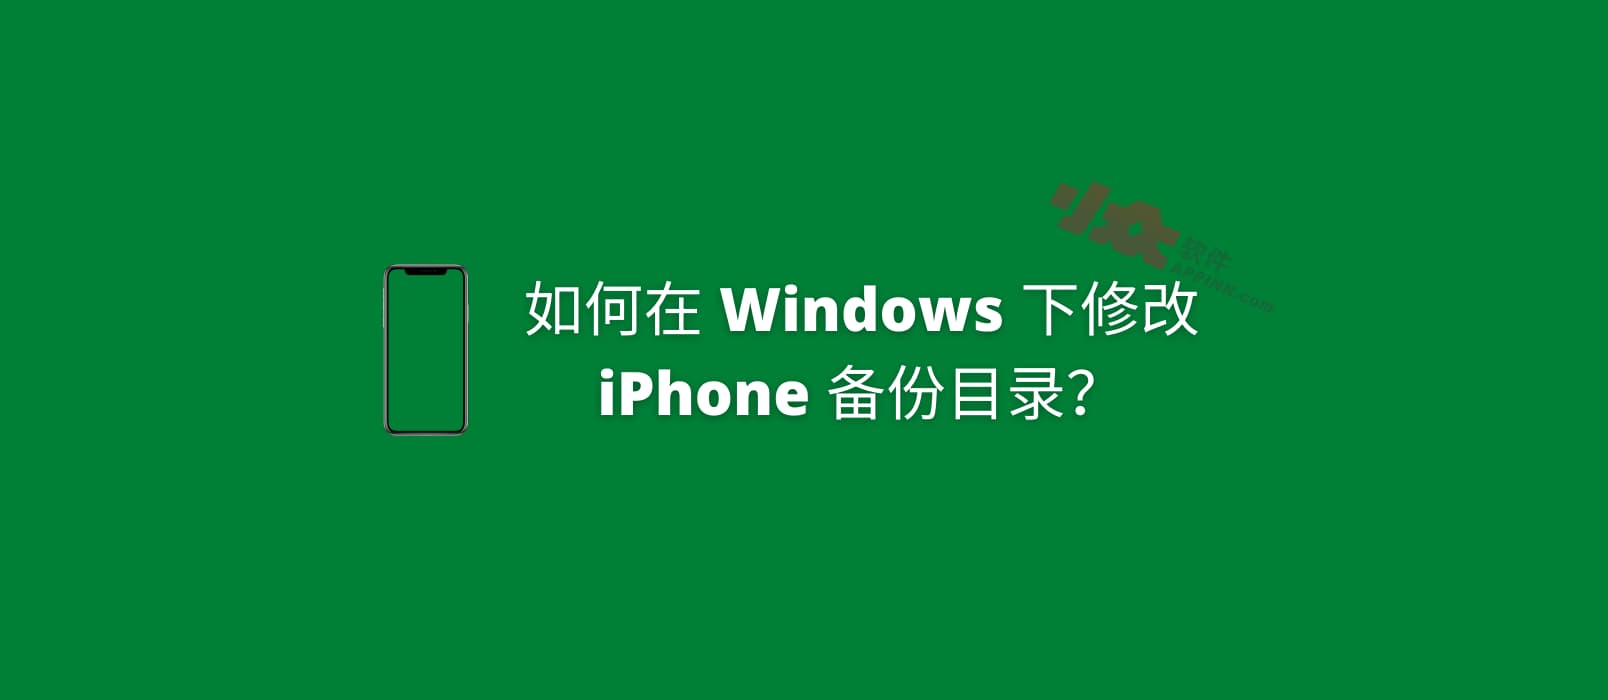 如何在 Windows 下修改 iPhone 备份目录？以节省 C 盘空间
